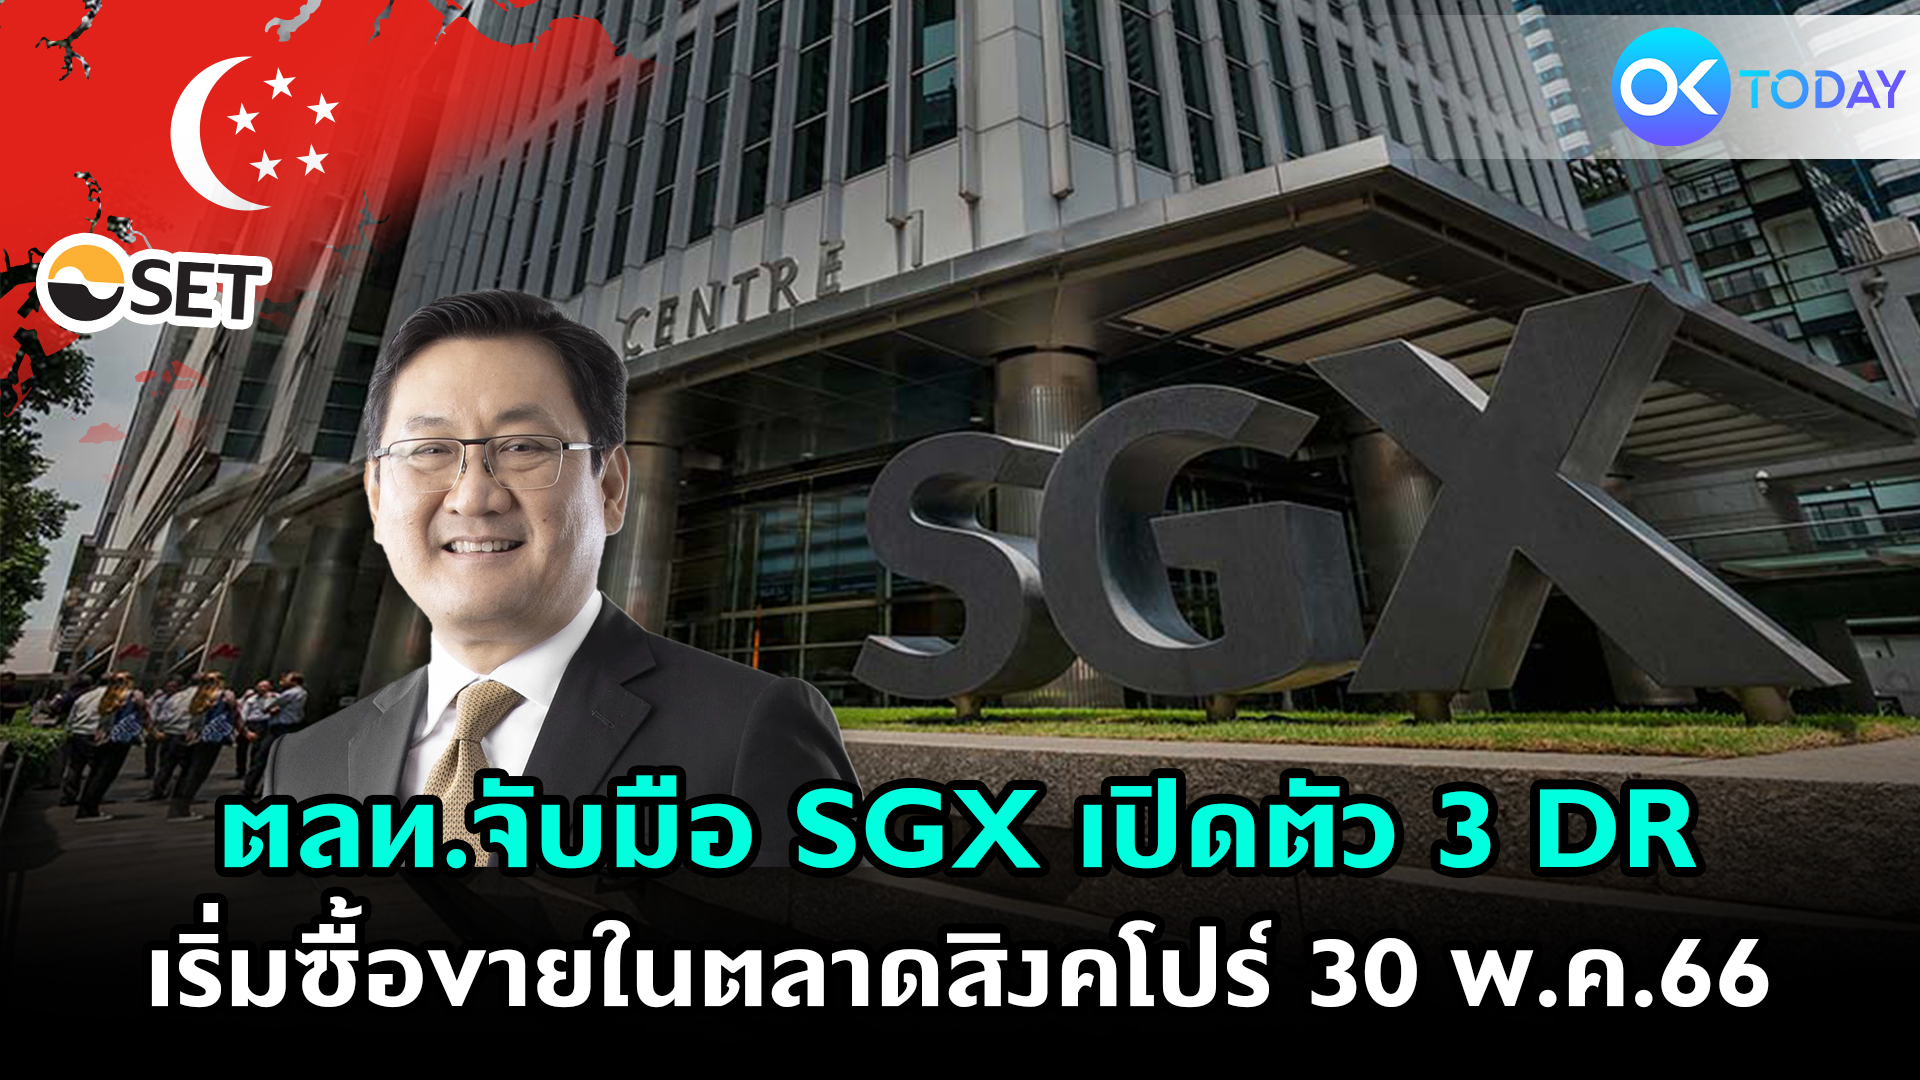 ตลท.จับมือ SGX เปิดตัว 3 DR เริ่มซื้อขายในตลาดสิงคโปร์ 30 พ.ค.66